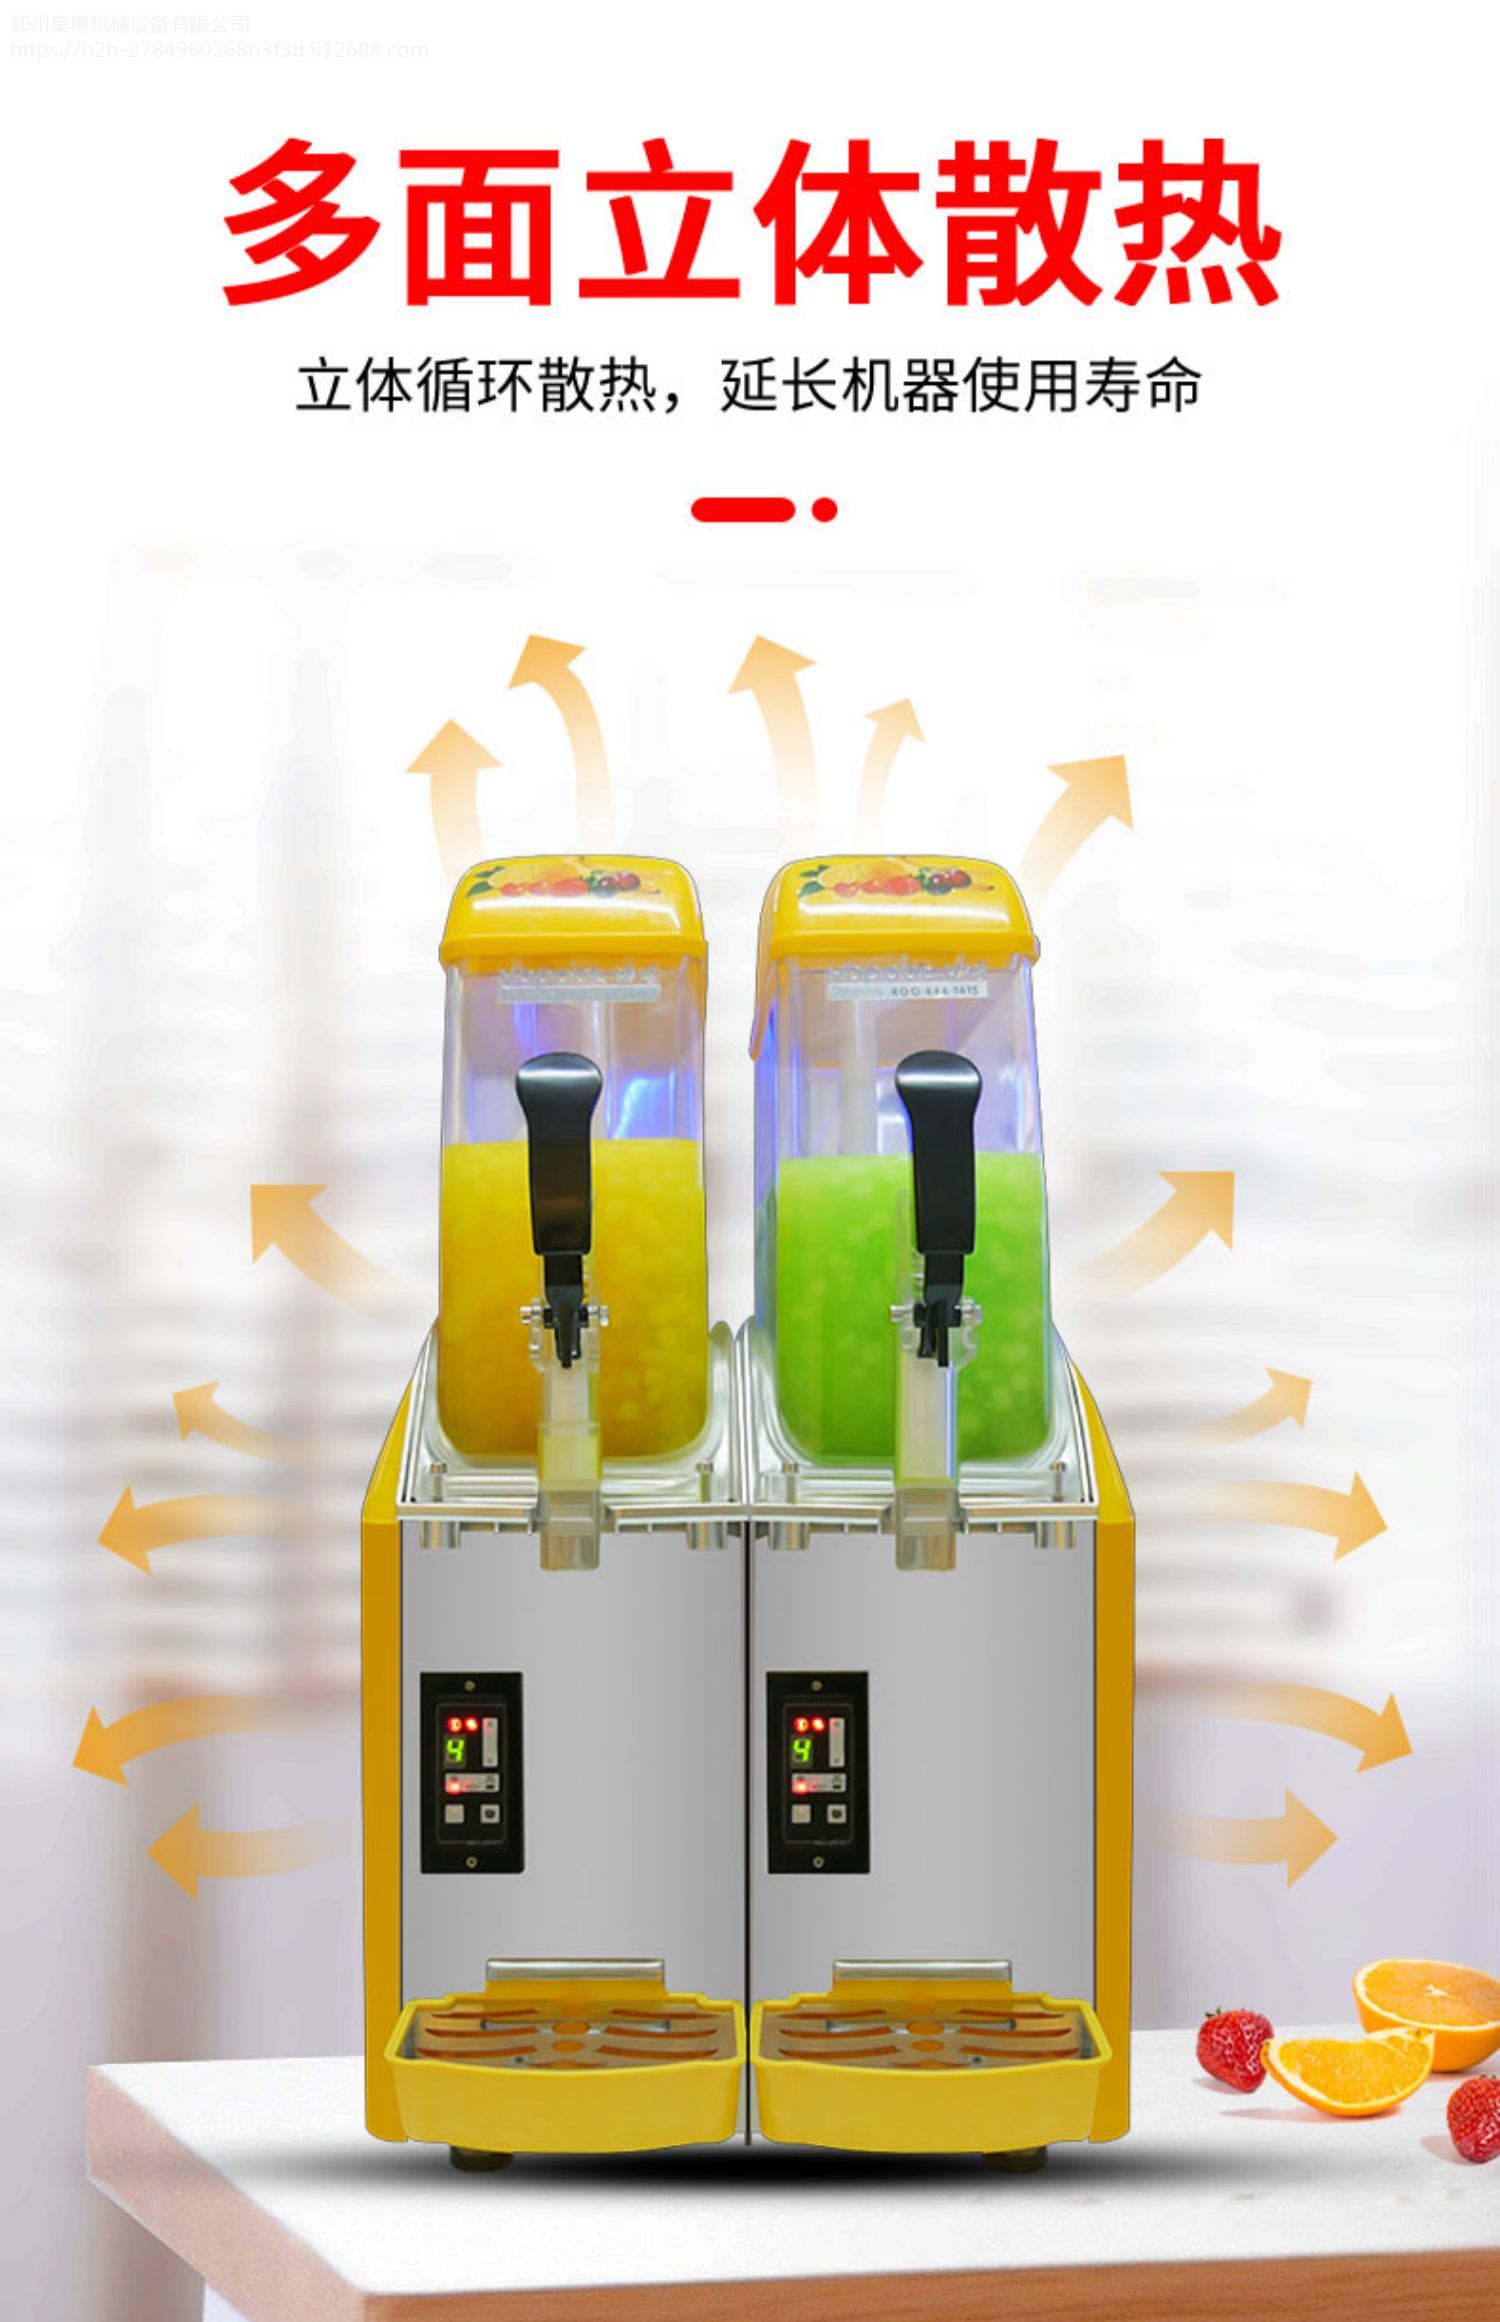 正品冰之乐 台式多功能 冷饮机沙冰机 X-240冰沙机图片